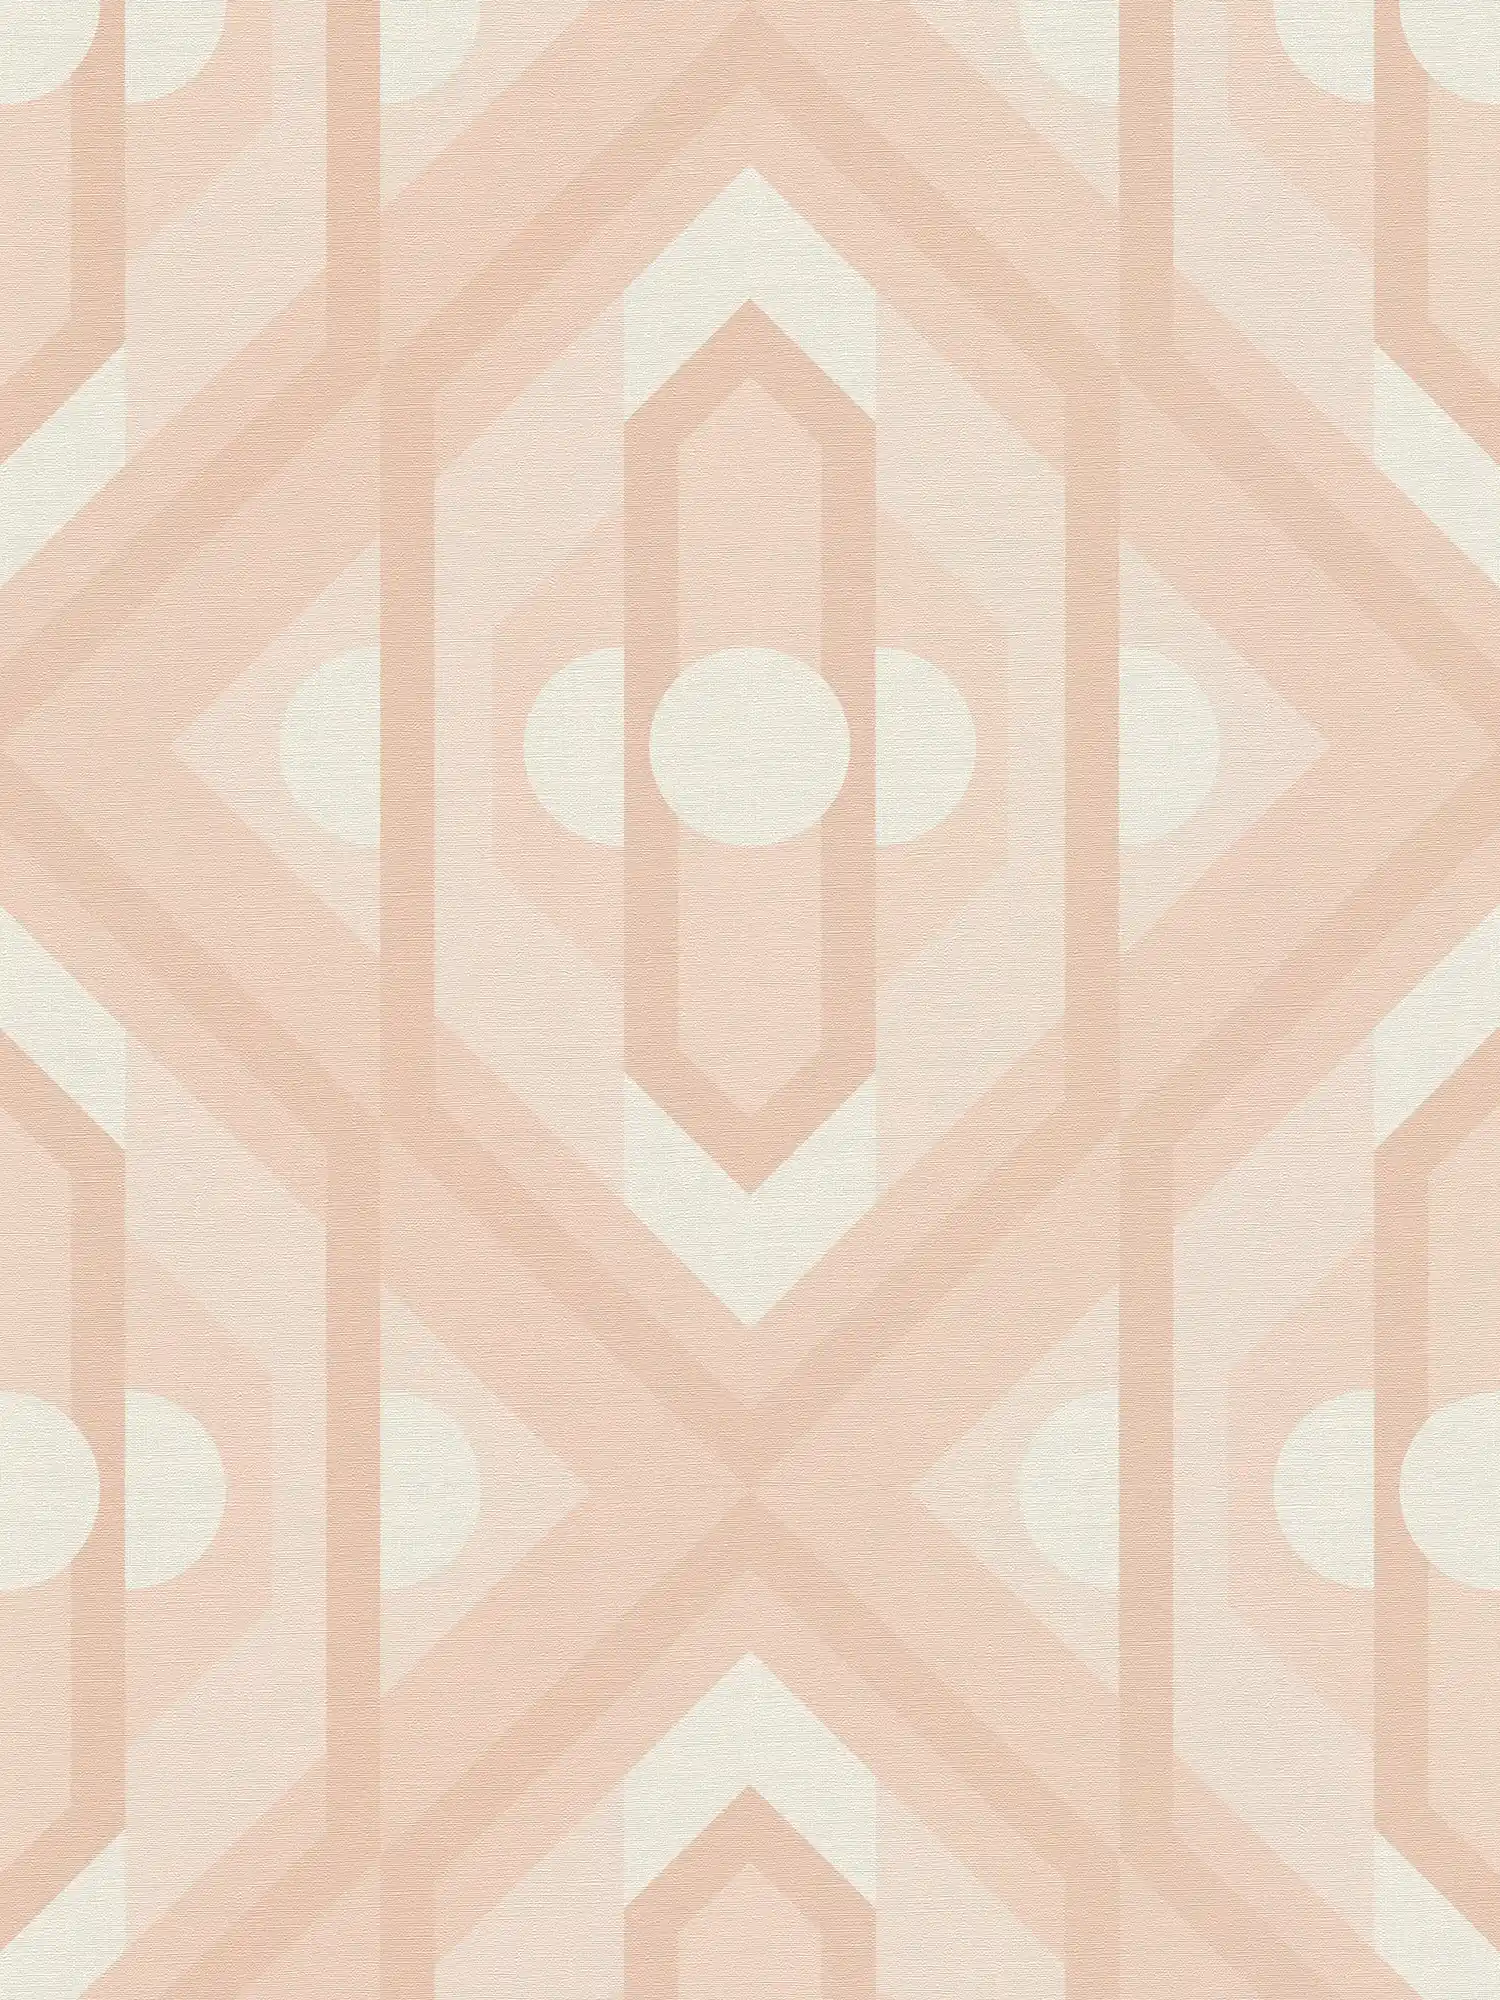 Retro Tapete mit geometrischen Ornamenten in sanften Farben – Beige, Creme, Weiß
